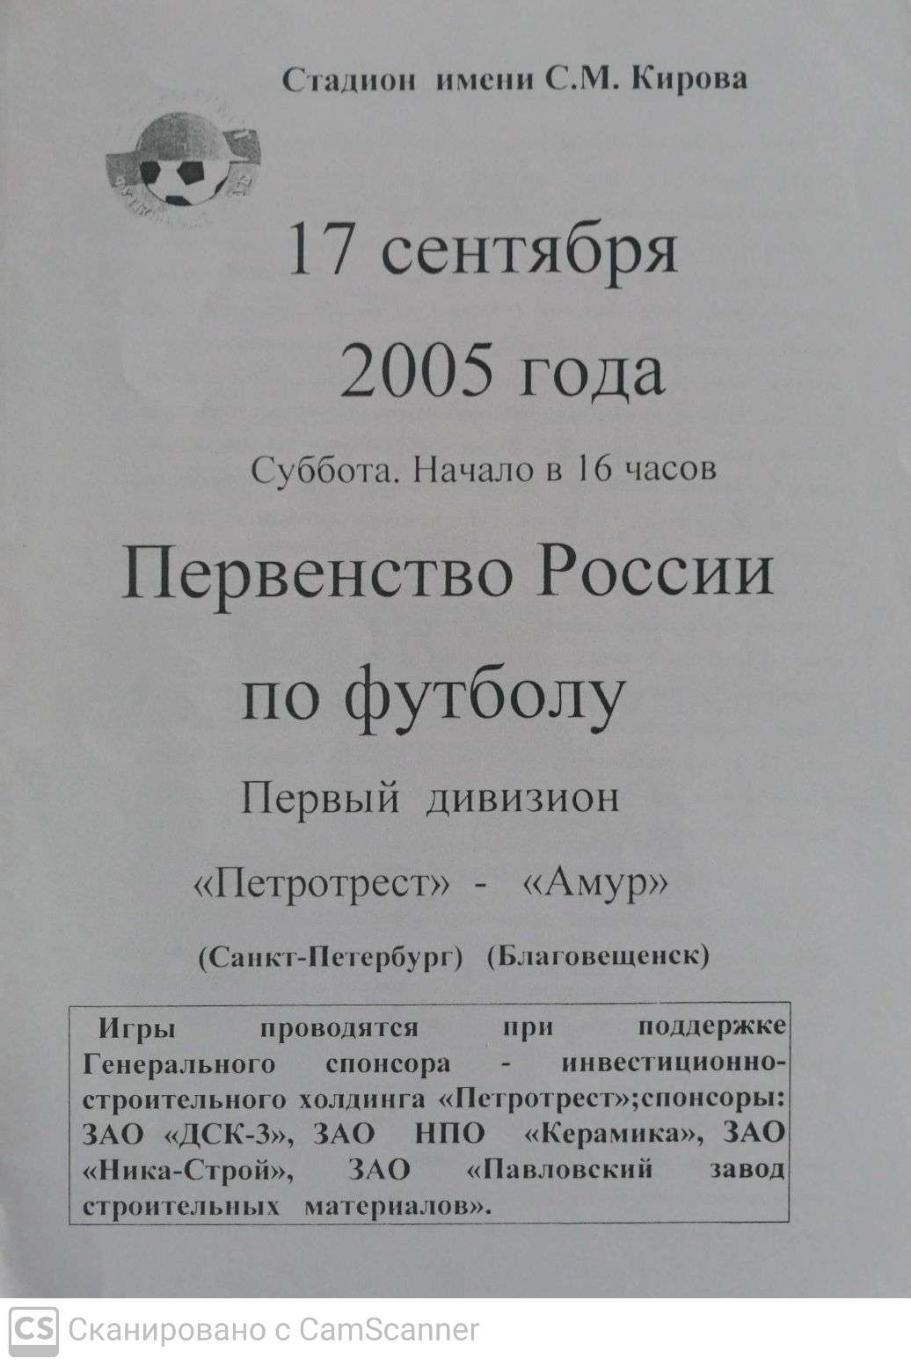 Первый дивизион. Петротрест СПб - Амур 17.09.2005